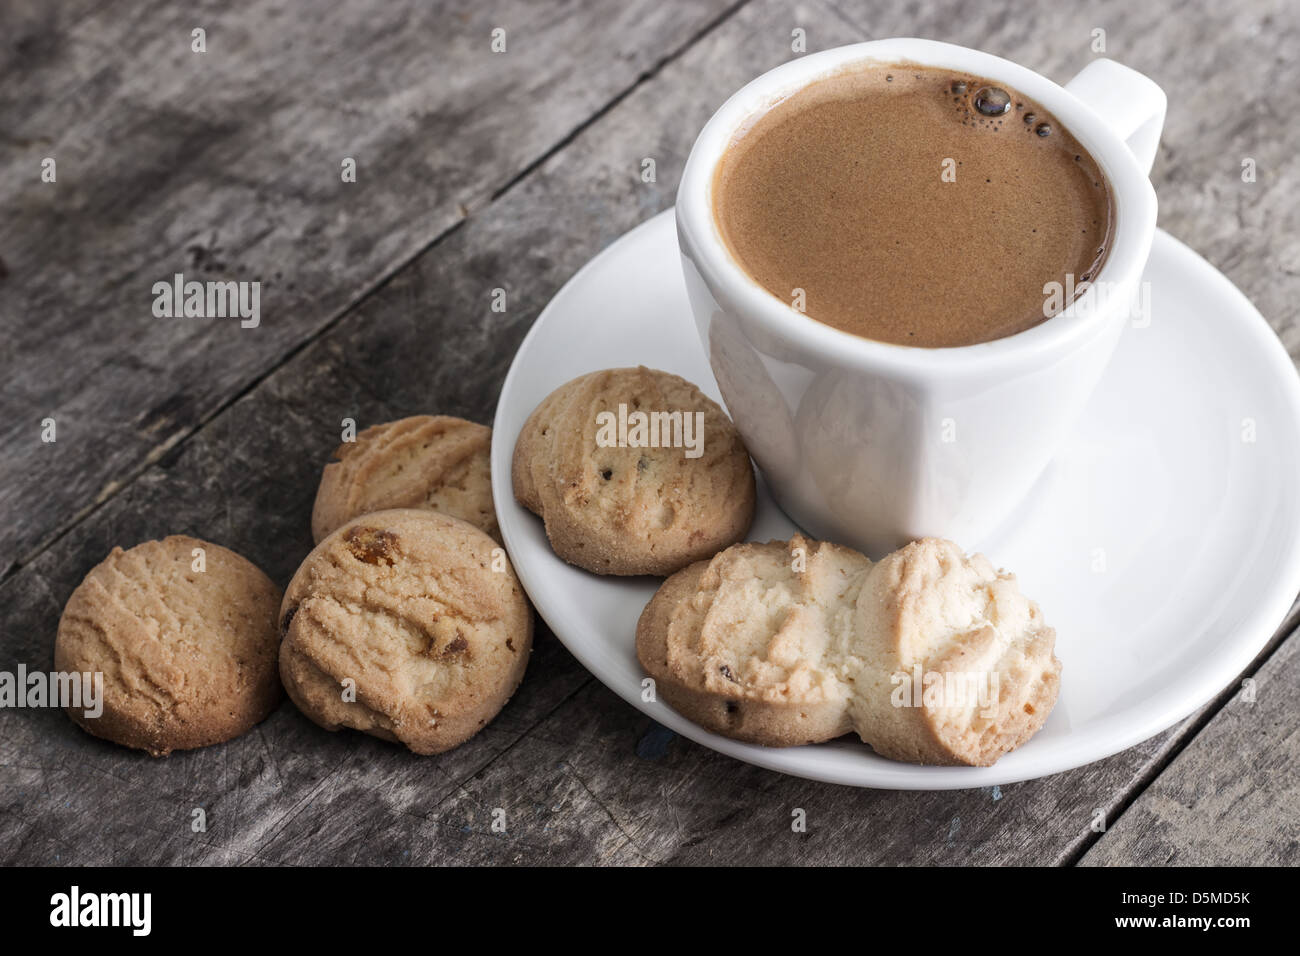 Cookies et tasse de café sur la table Banque D'Images